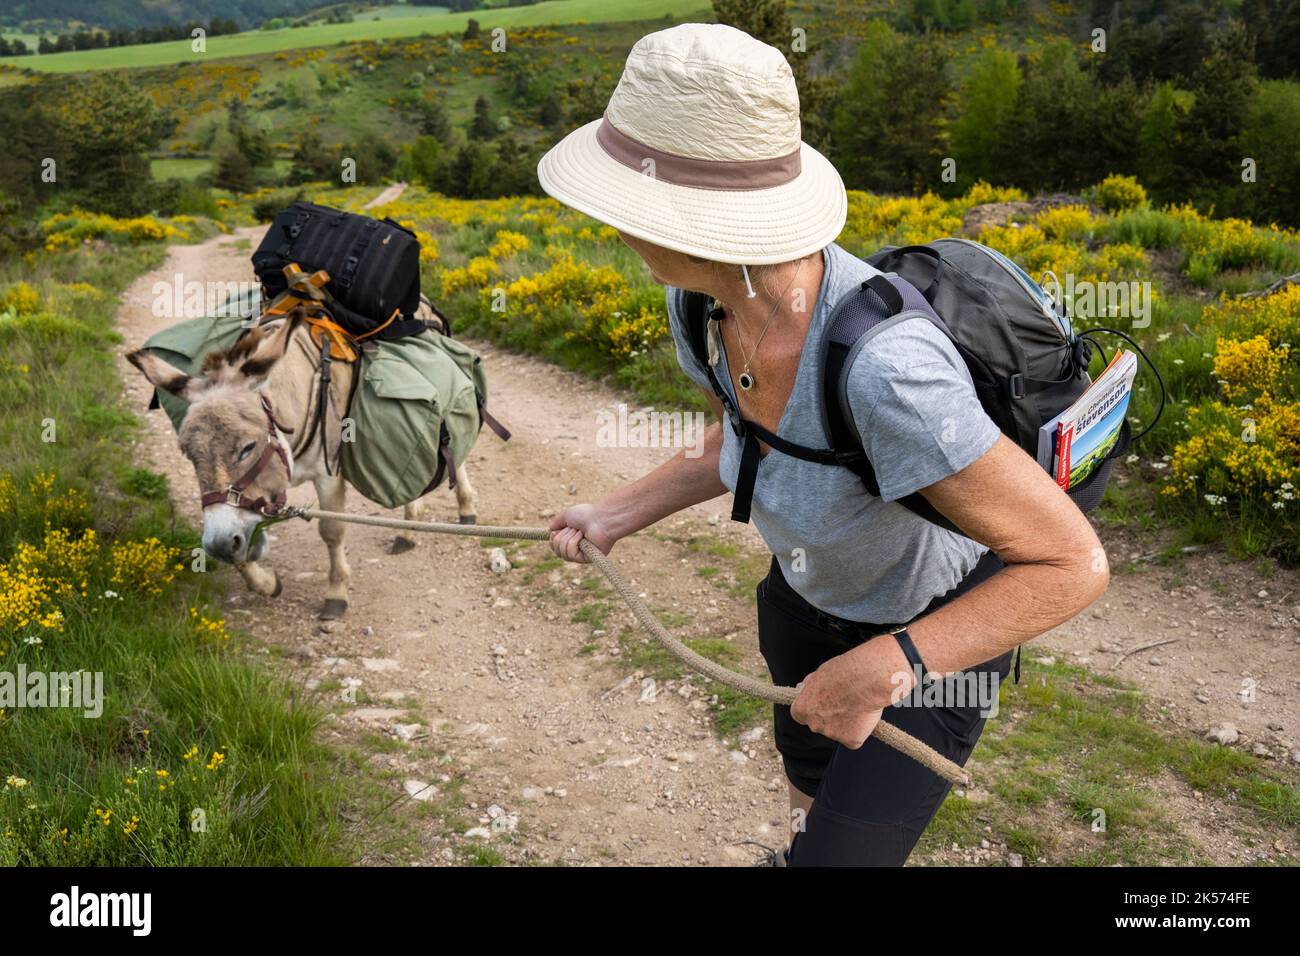 Frankreich, Ardèche, Laveyrune, beim Wandern mit einem Esel auf dem Robert Louis Stevenson Trail (GR 70) hat sich der Esel Anatole entschieden, nicht weiterzumachen Stockfoto